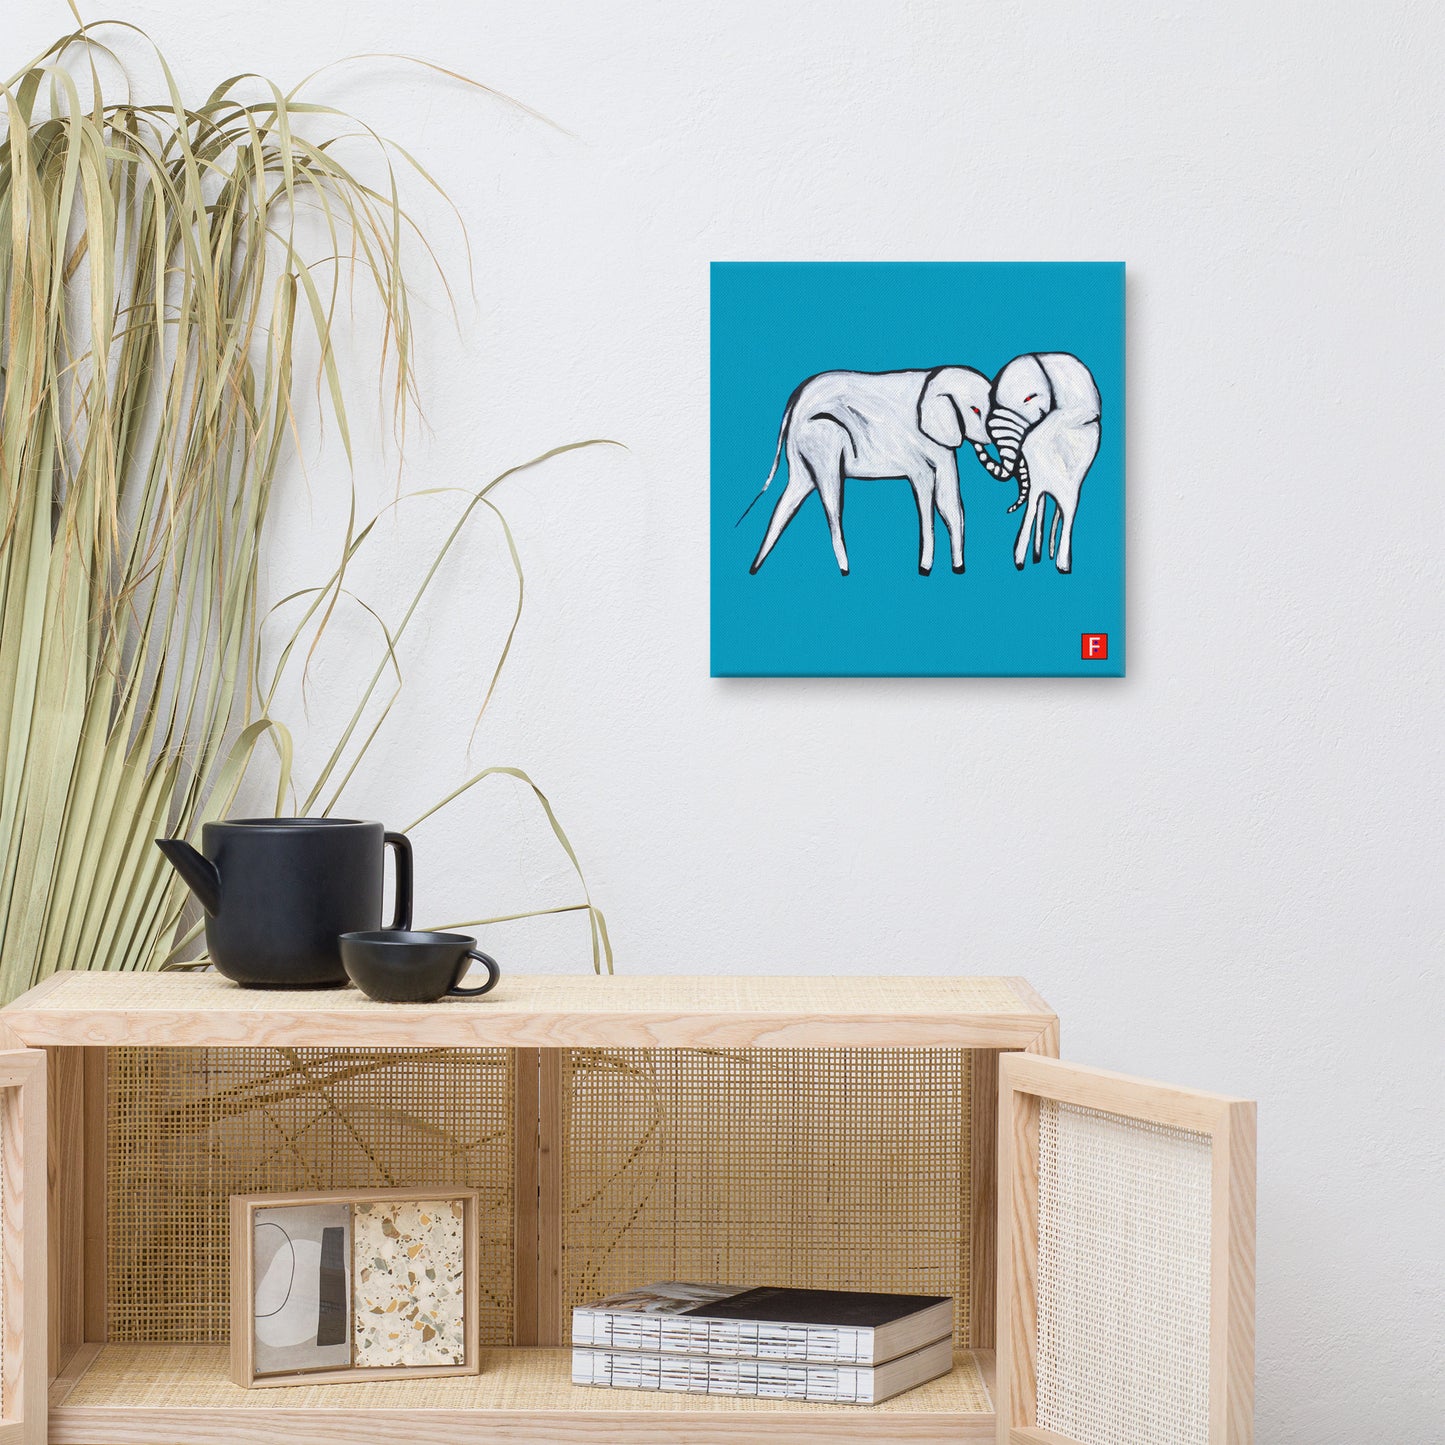 Canvas (16" X 16") Elephants blue background